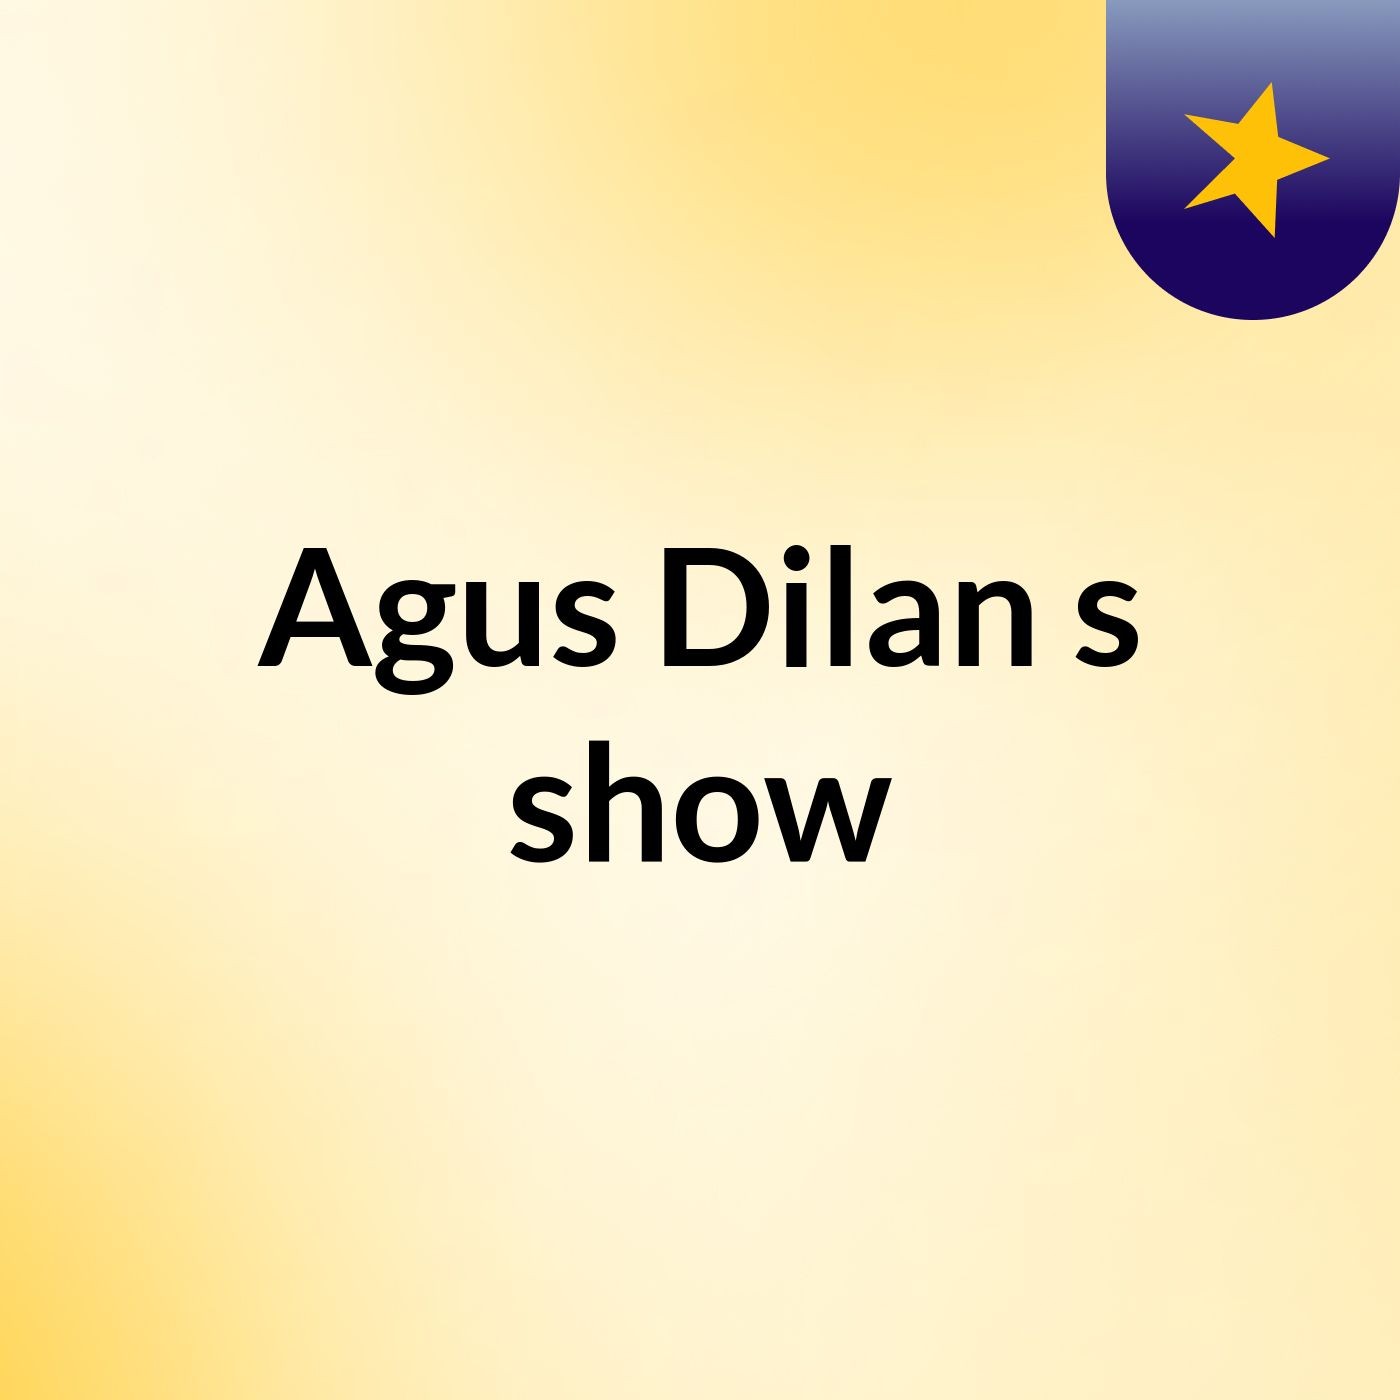 Episode 2 - Agus Dilan's show